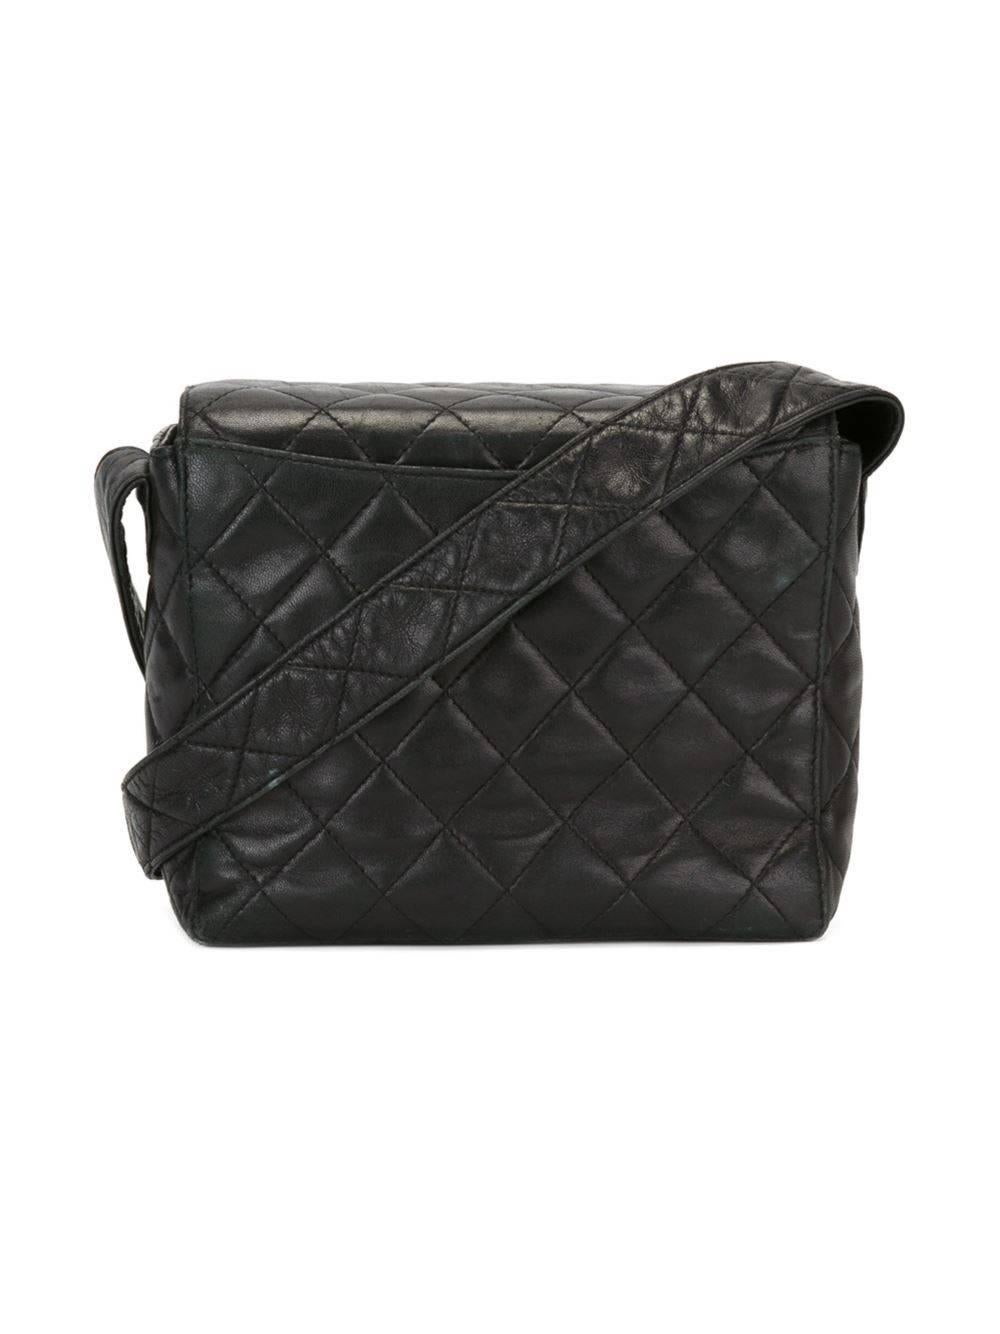 Black Chanel Vintage Quilted Shoulder Bag